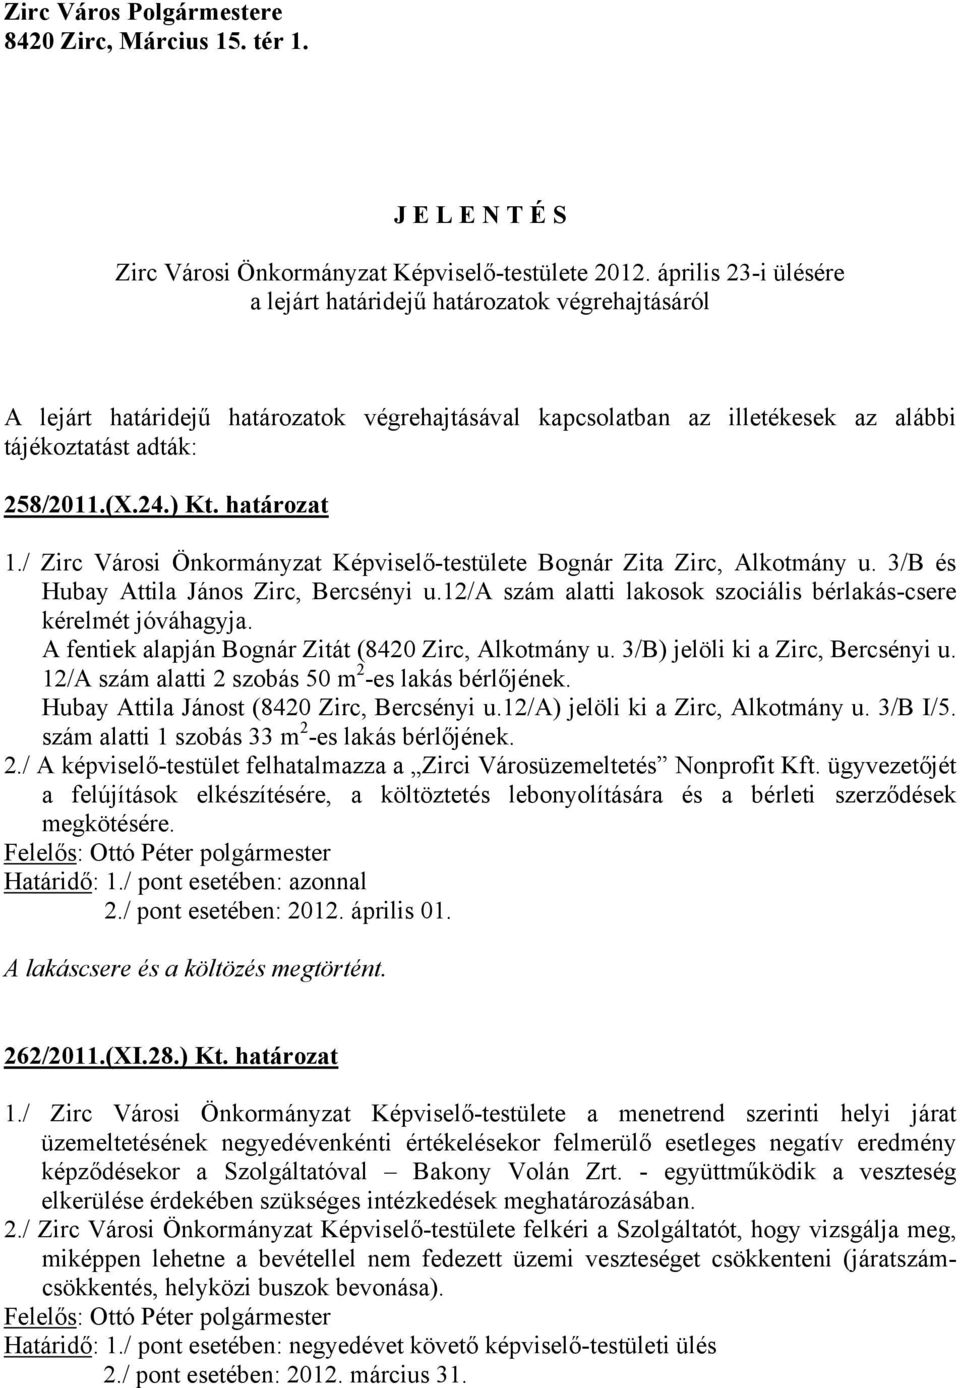 határozat 1./ Zirc Városi Önkormányzat Képviselő-testülete Bognár Zita Zirc, Alkotmány u. 3/B és Hubay Attila János Zirc, Bercsényi u.